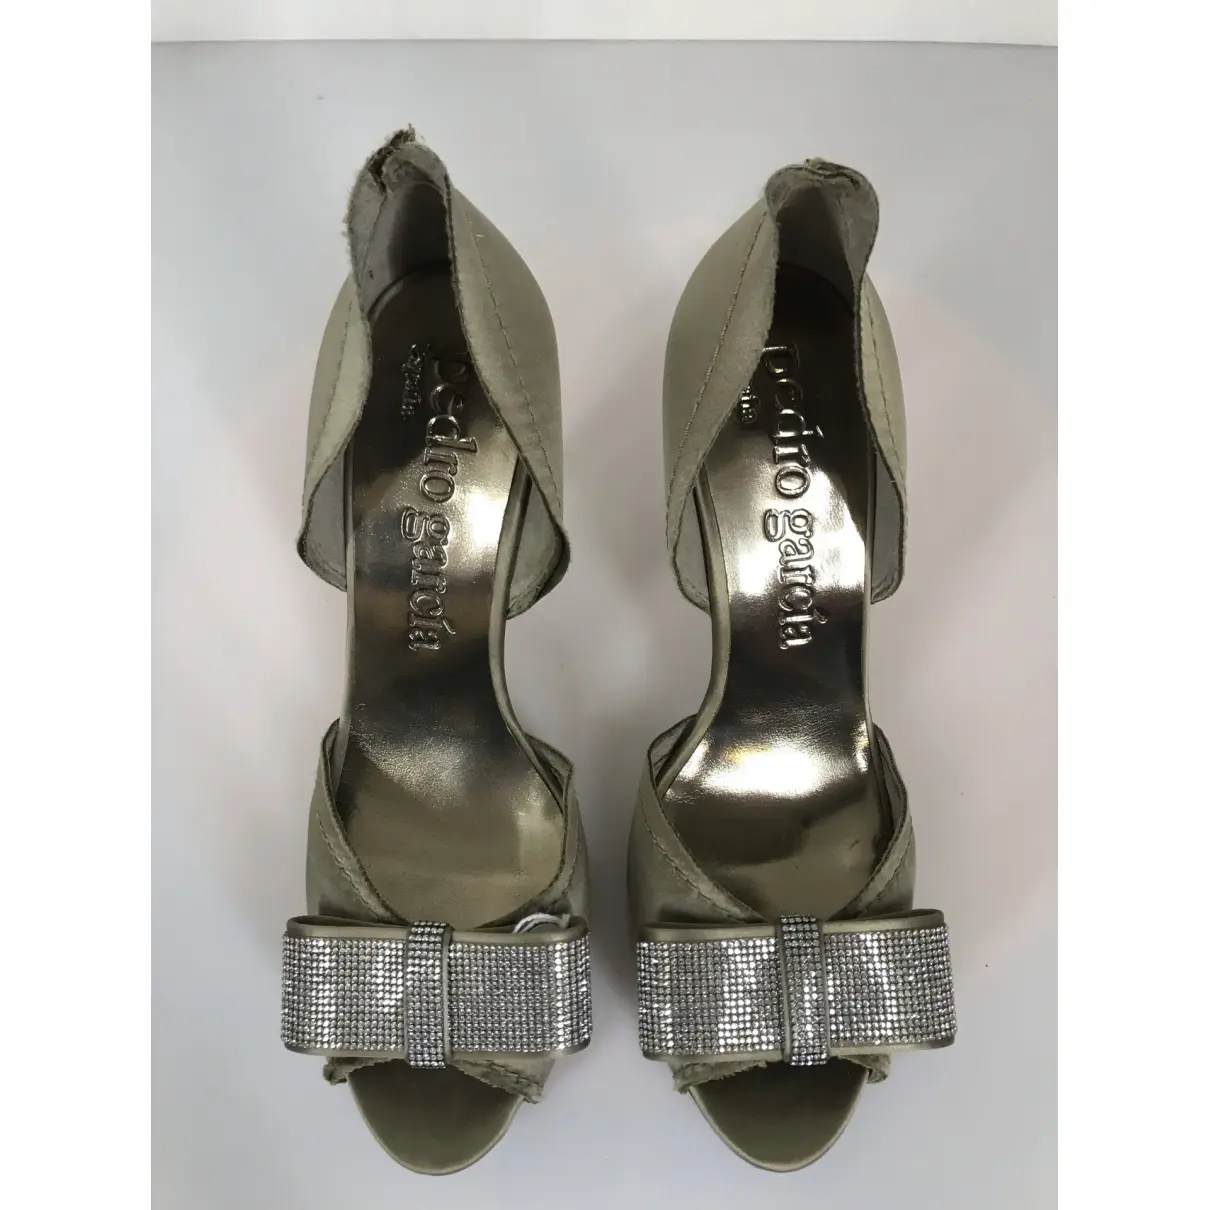 Buy Pedro Garcia Glitter heels online